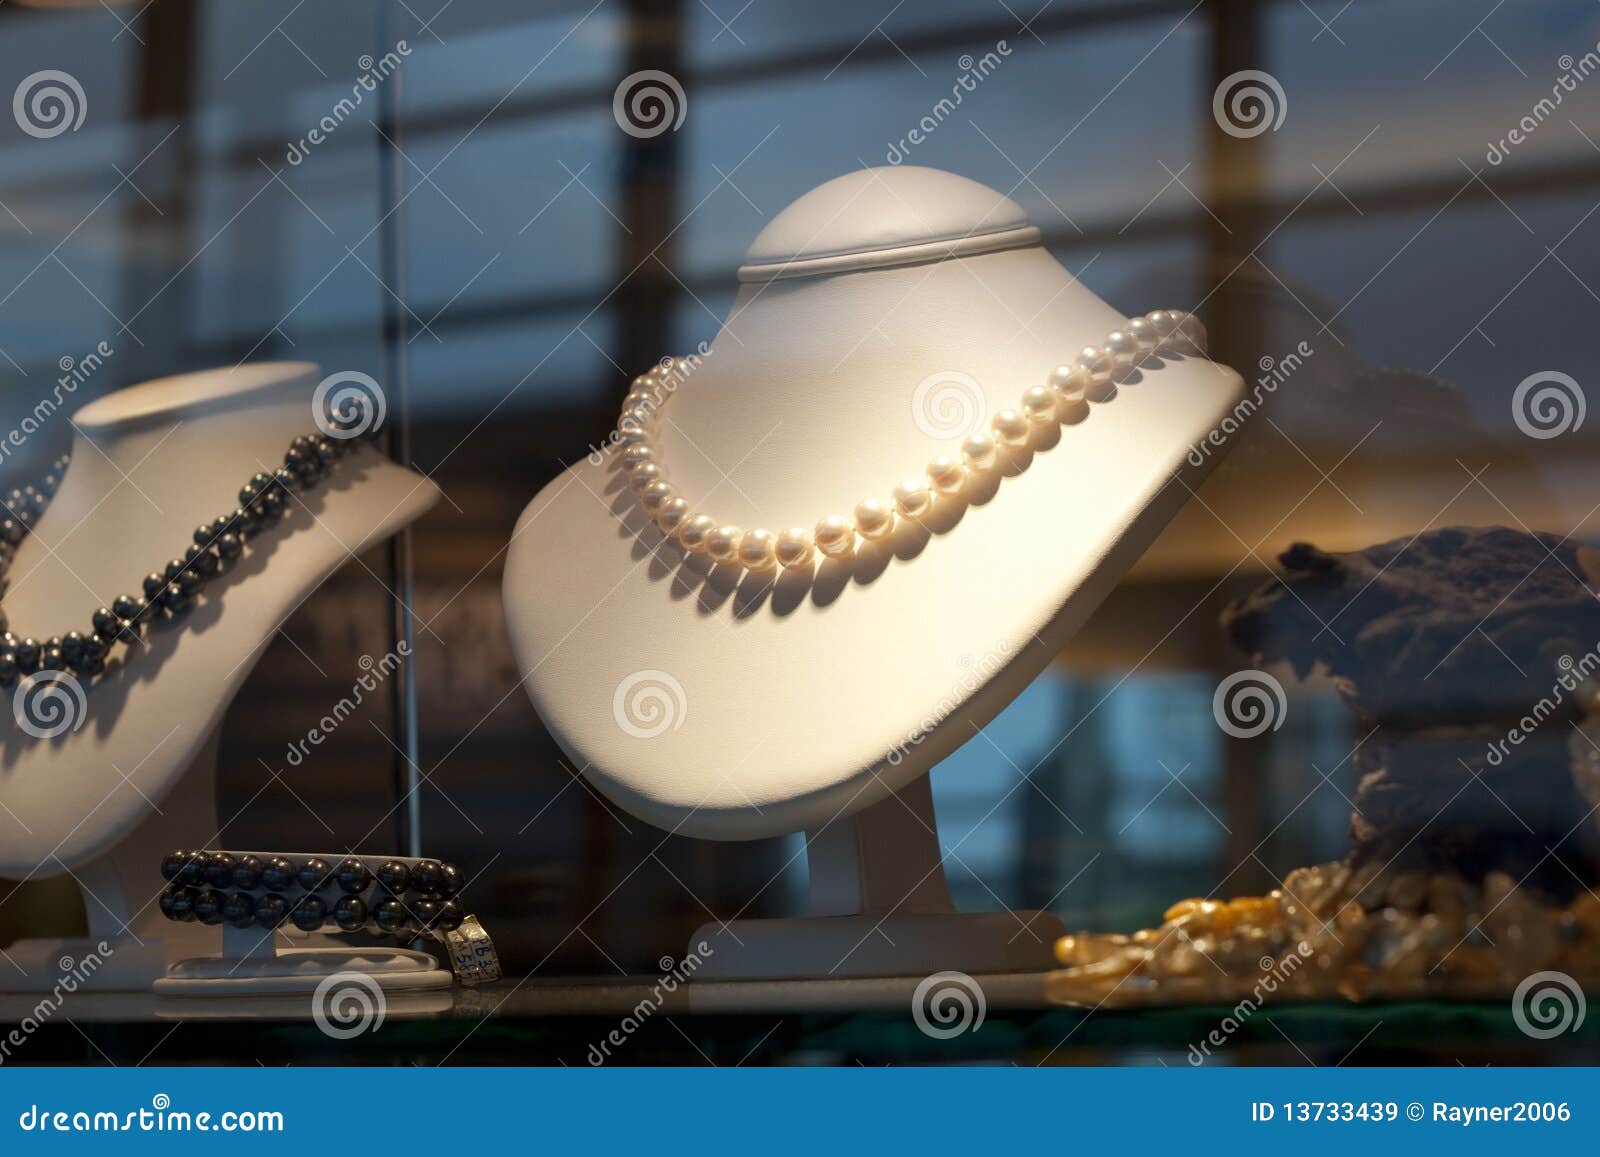 displayed pearl jewelery